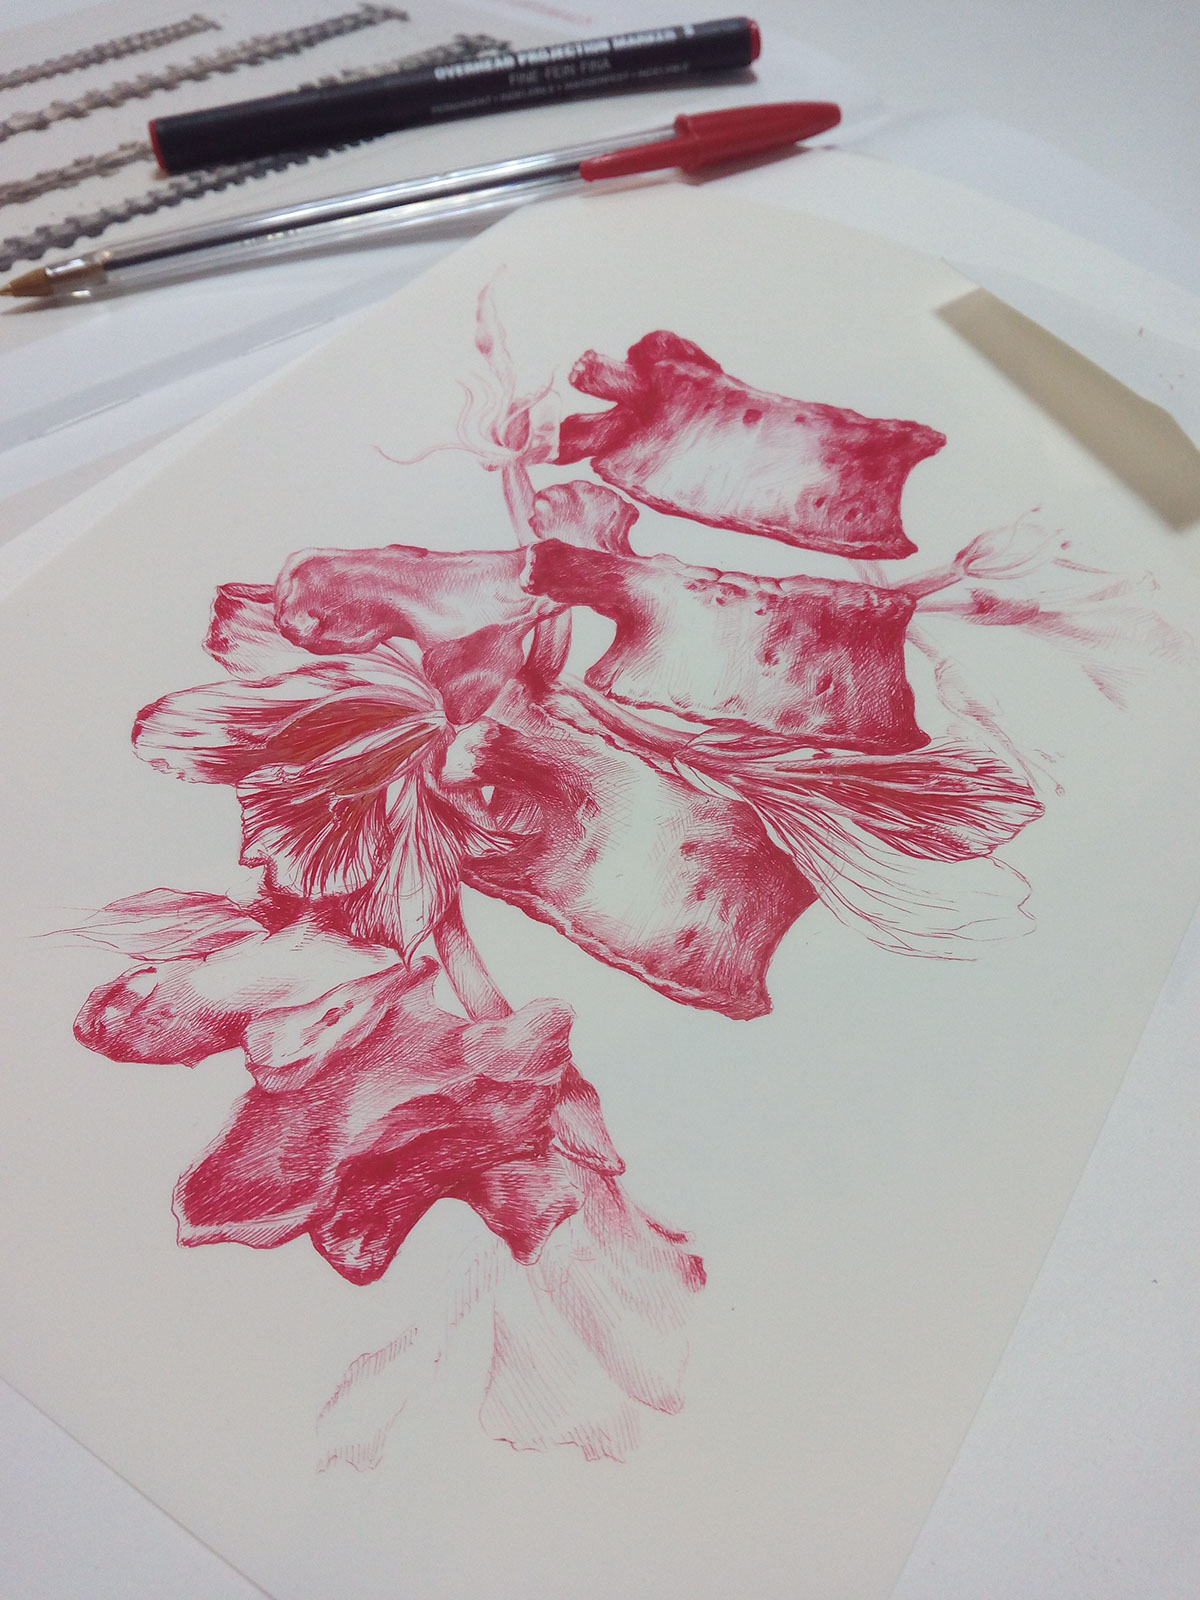 litografia lithography Reproducción Serie vertebras Huesos bones Flores Flowers